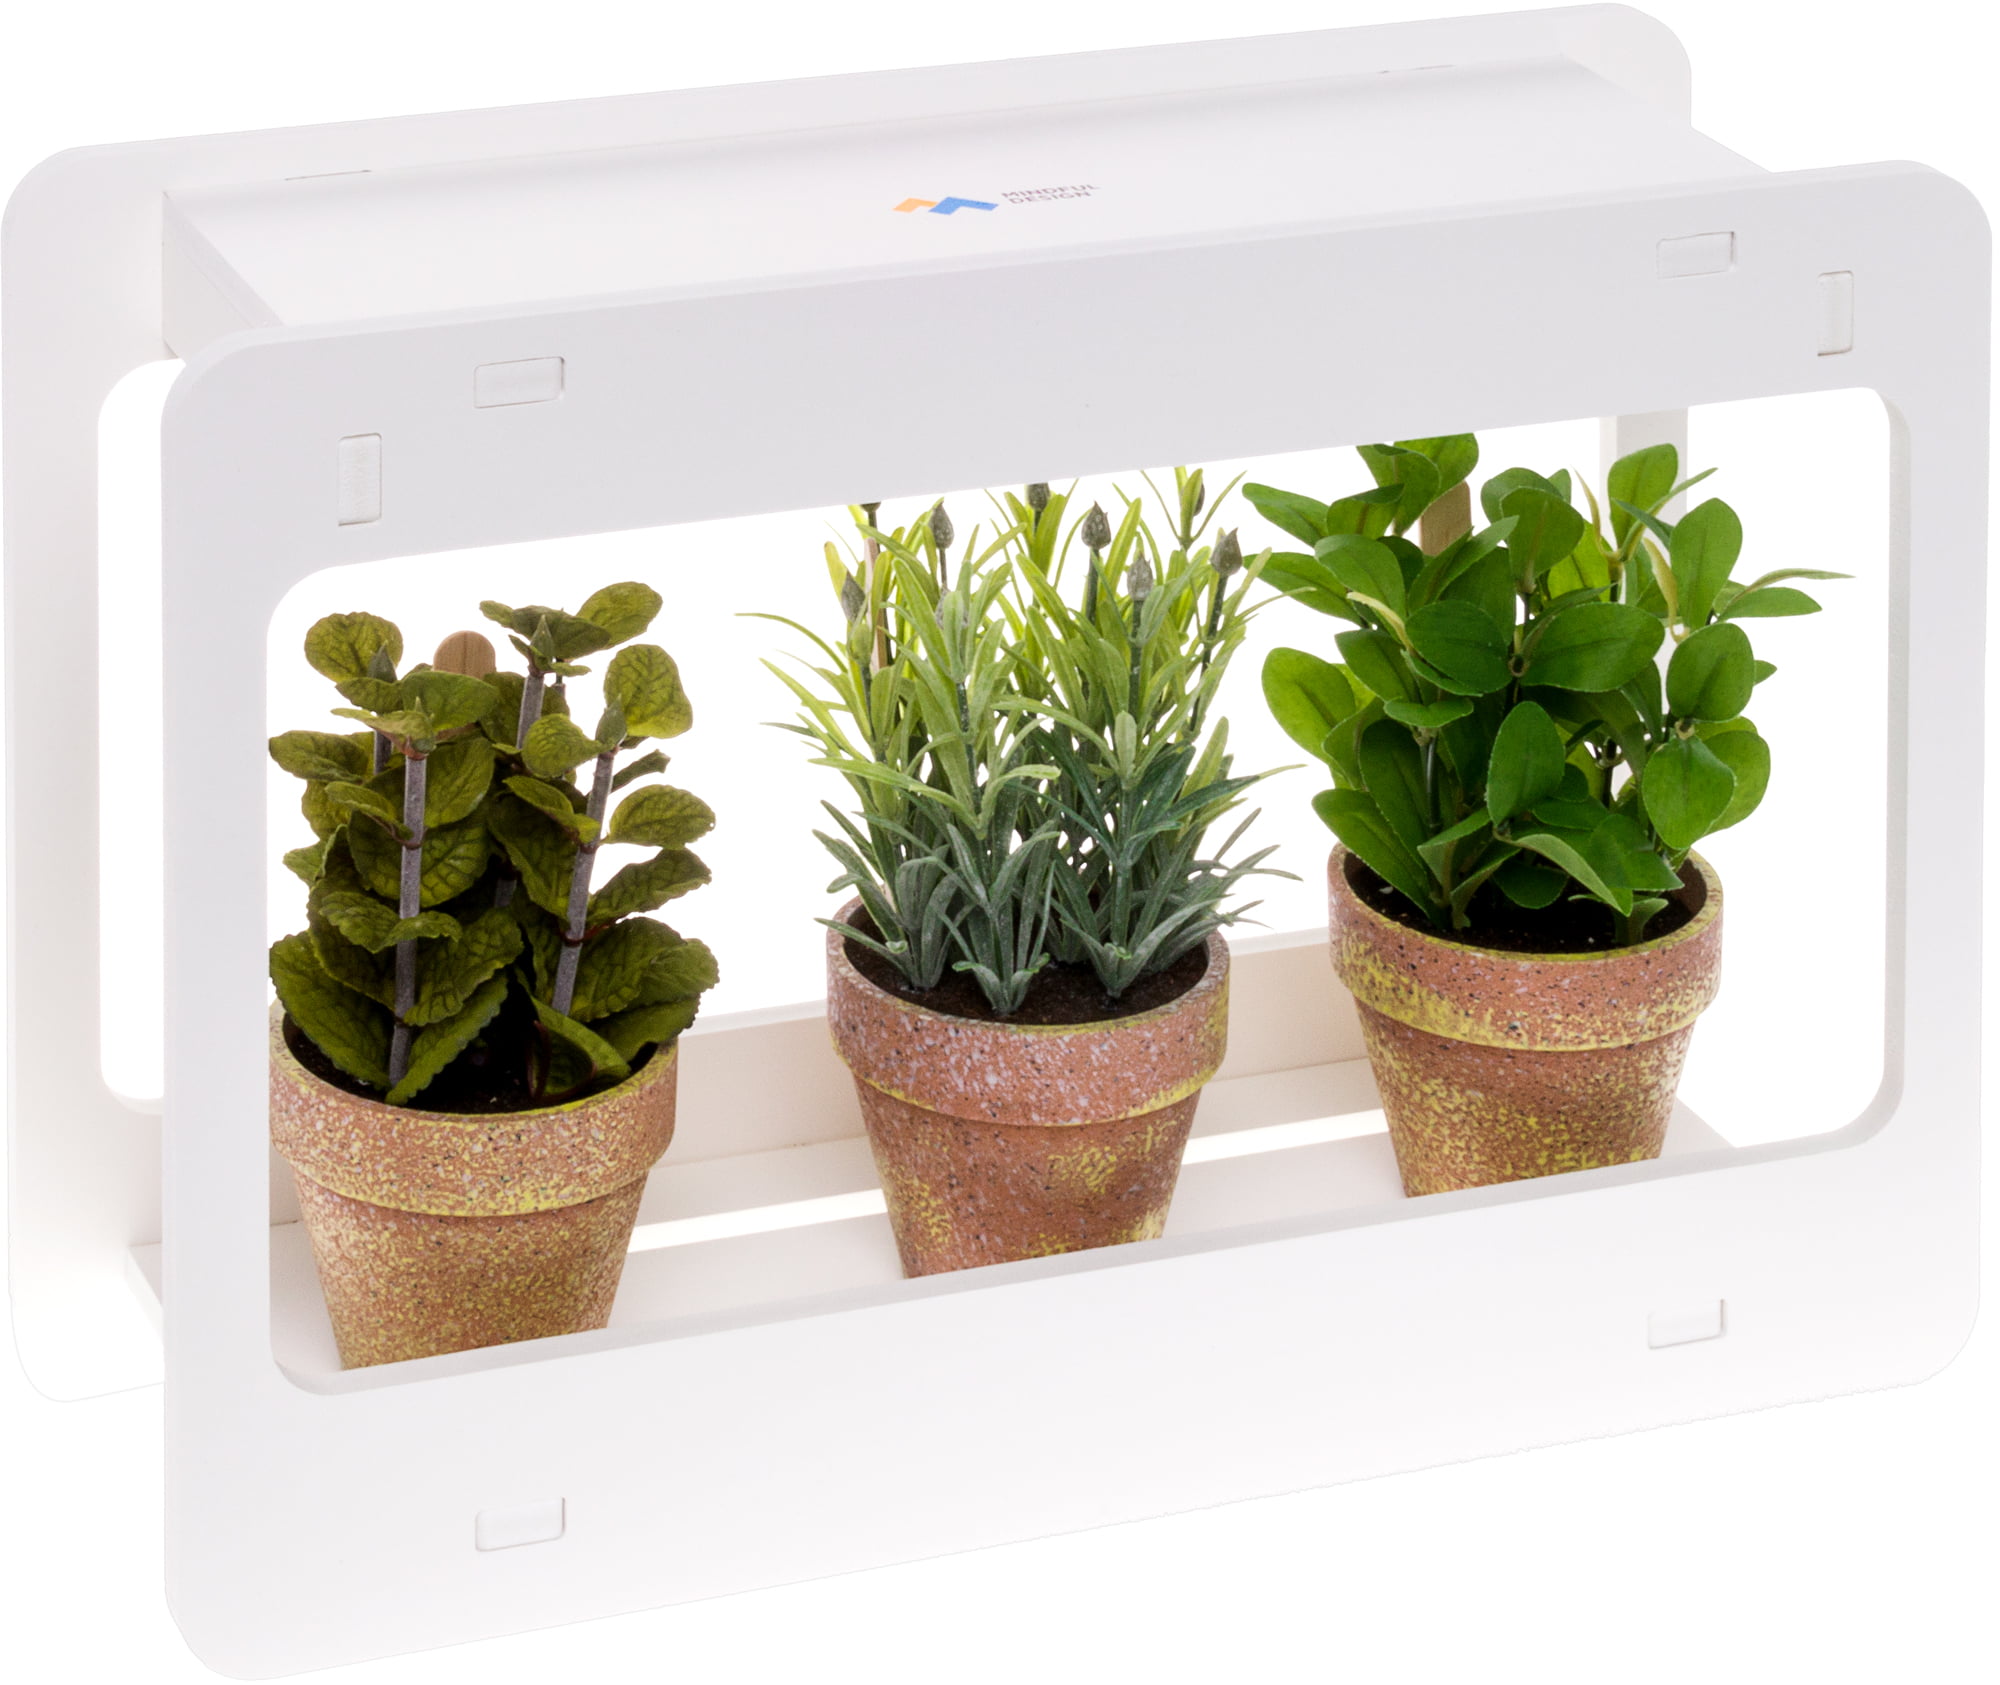 iDOO 7 Pods Indoor Garden Kit, Hydroponics Growing System, Smart 